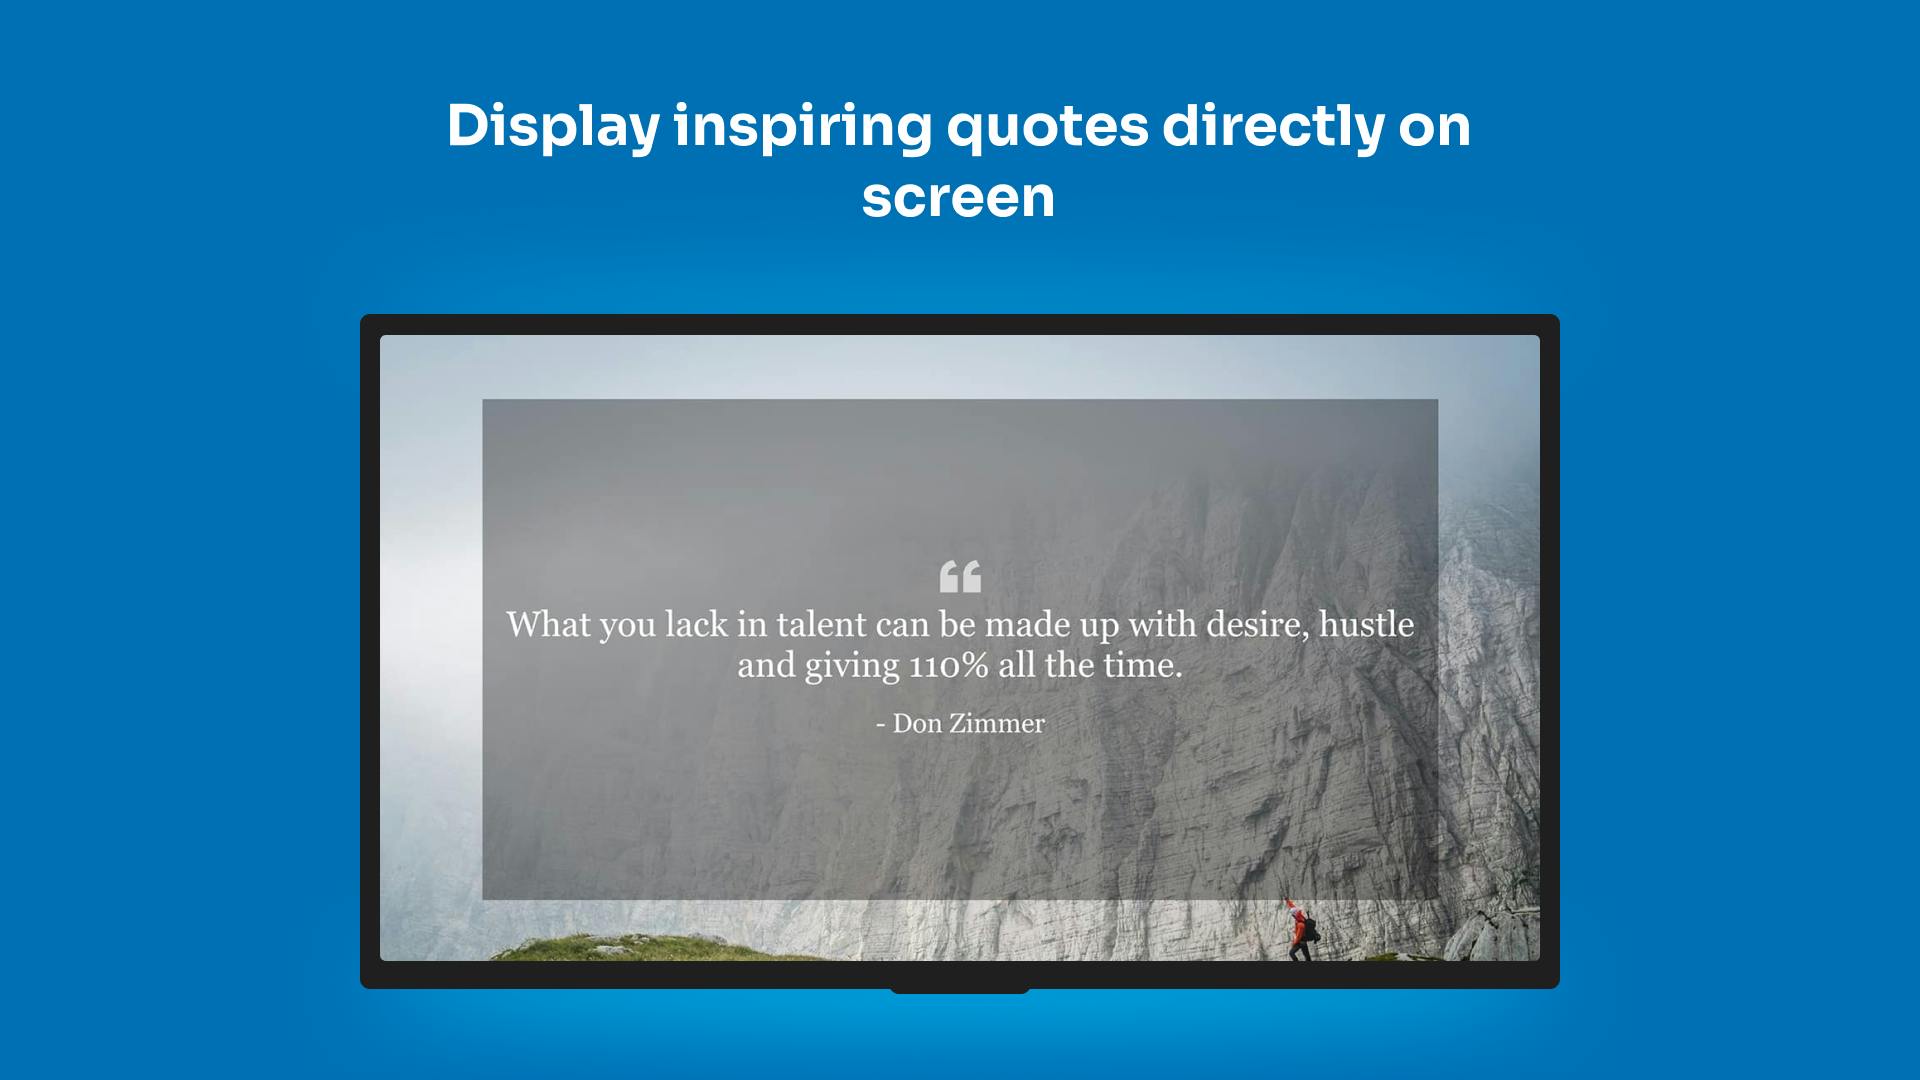 ScreenCloud Dashboard example on screen